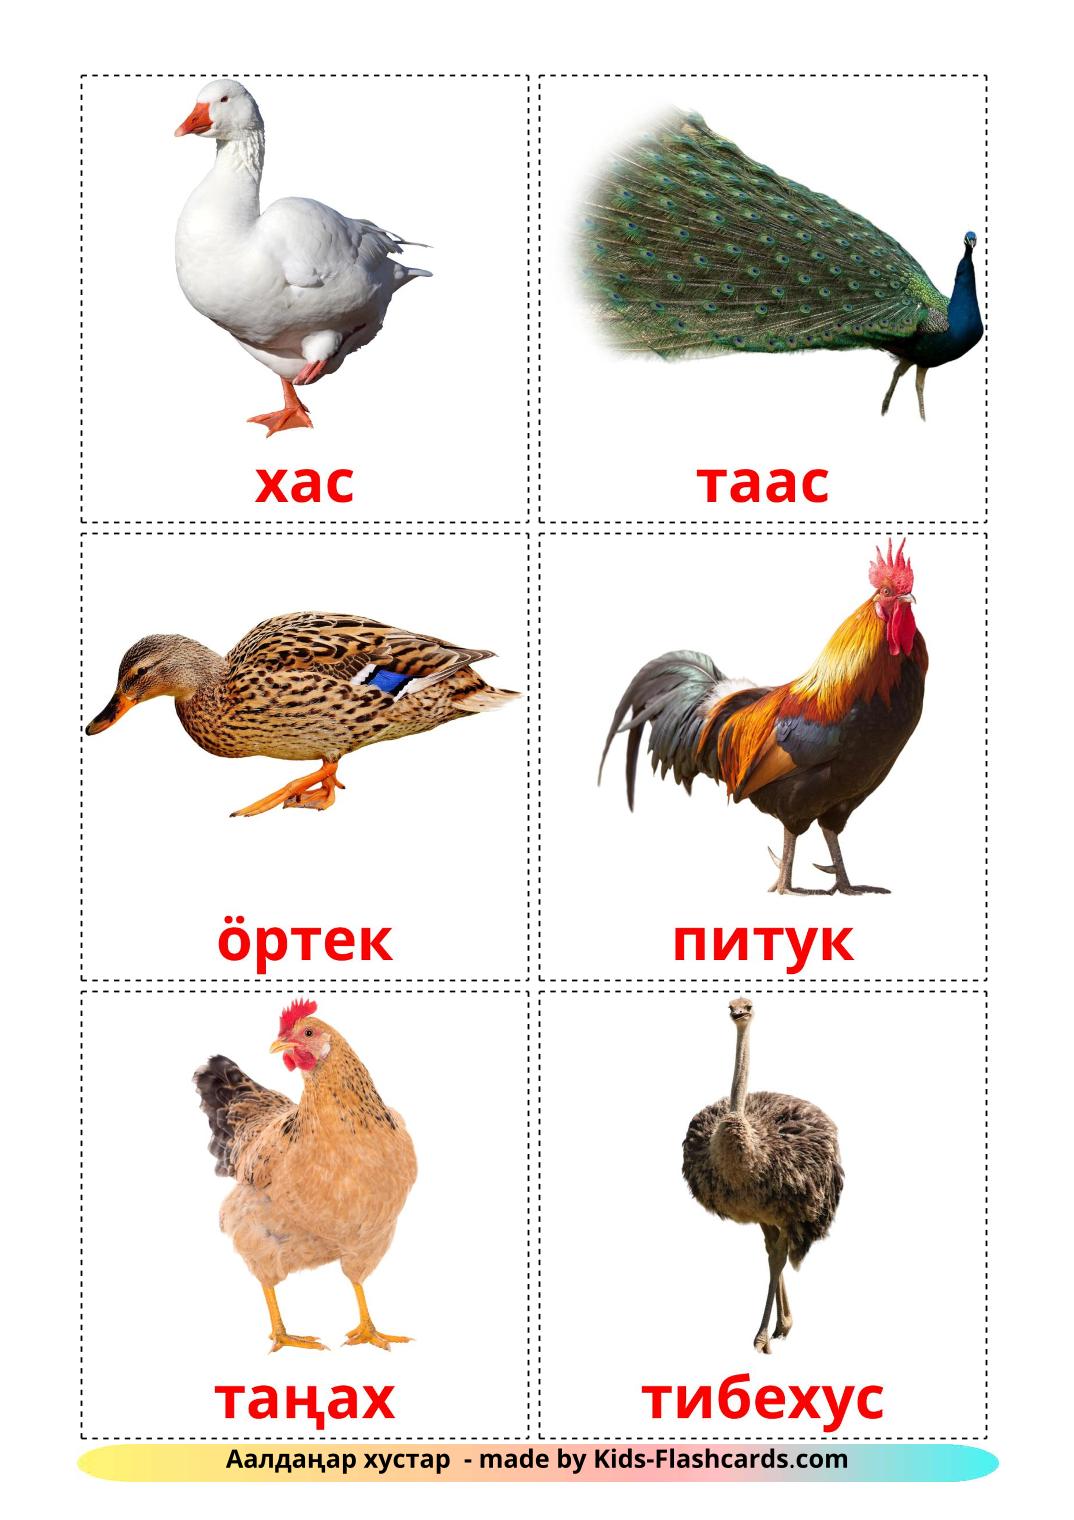 Птицы в деревне - 11 Карточек Домана на киргизском